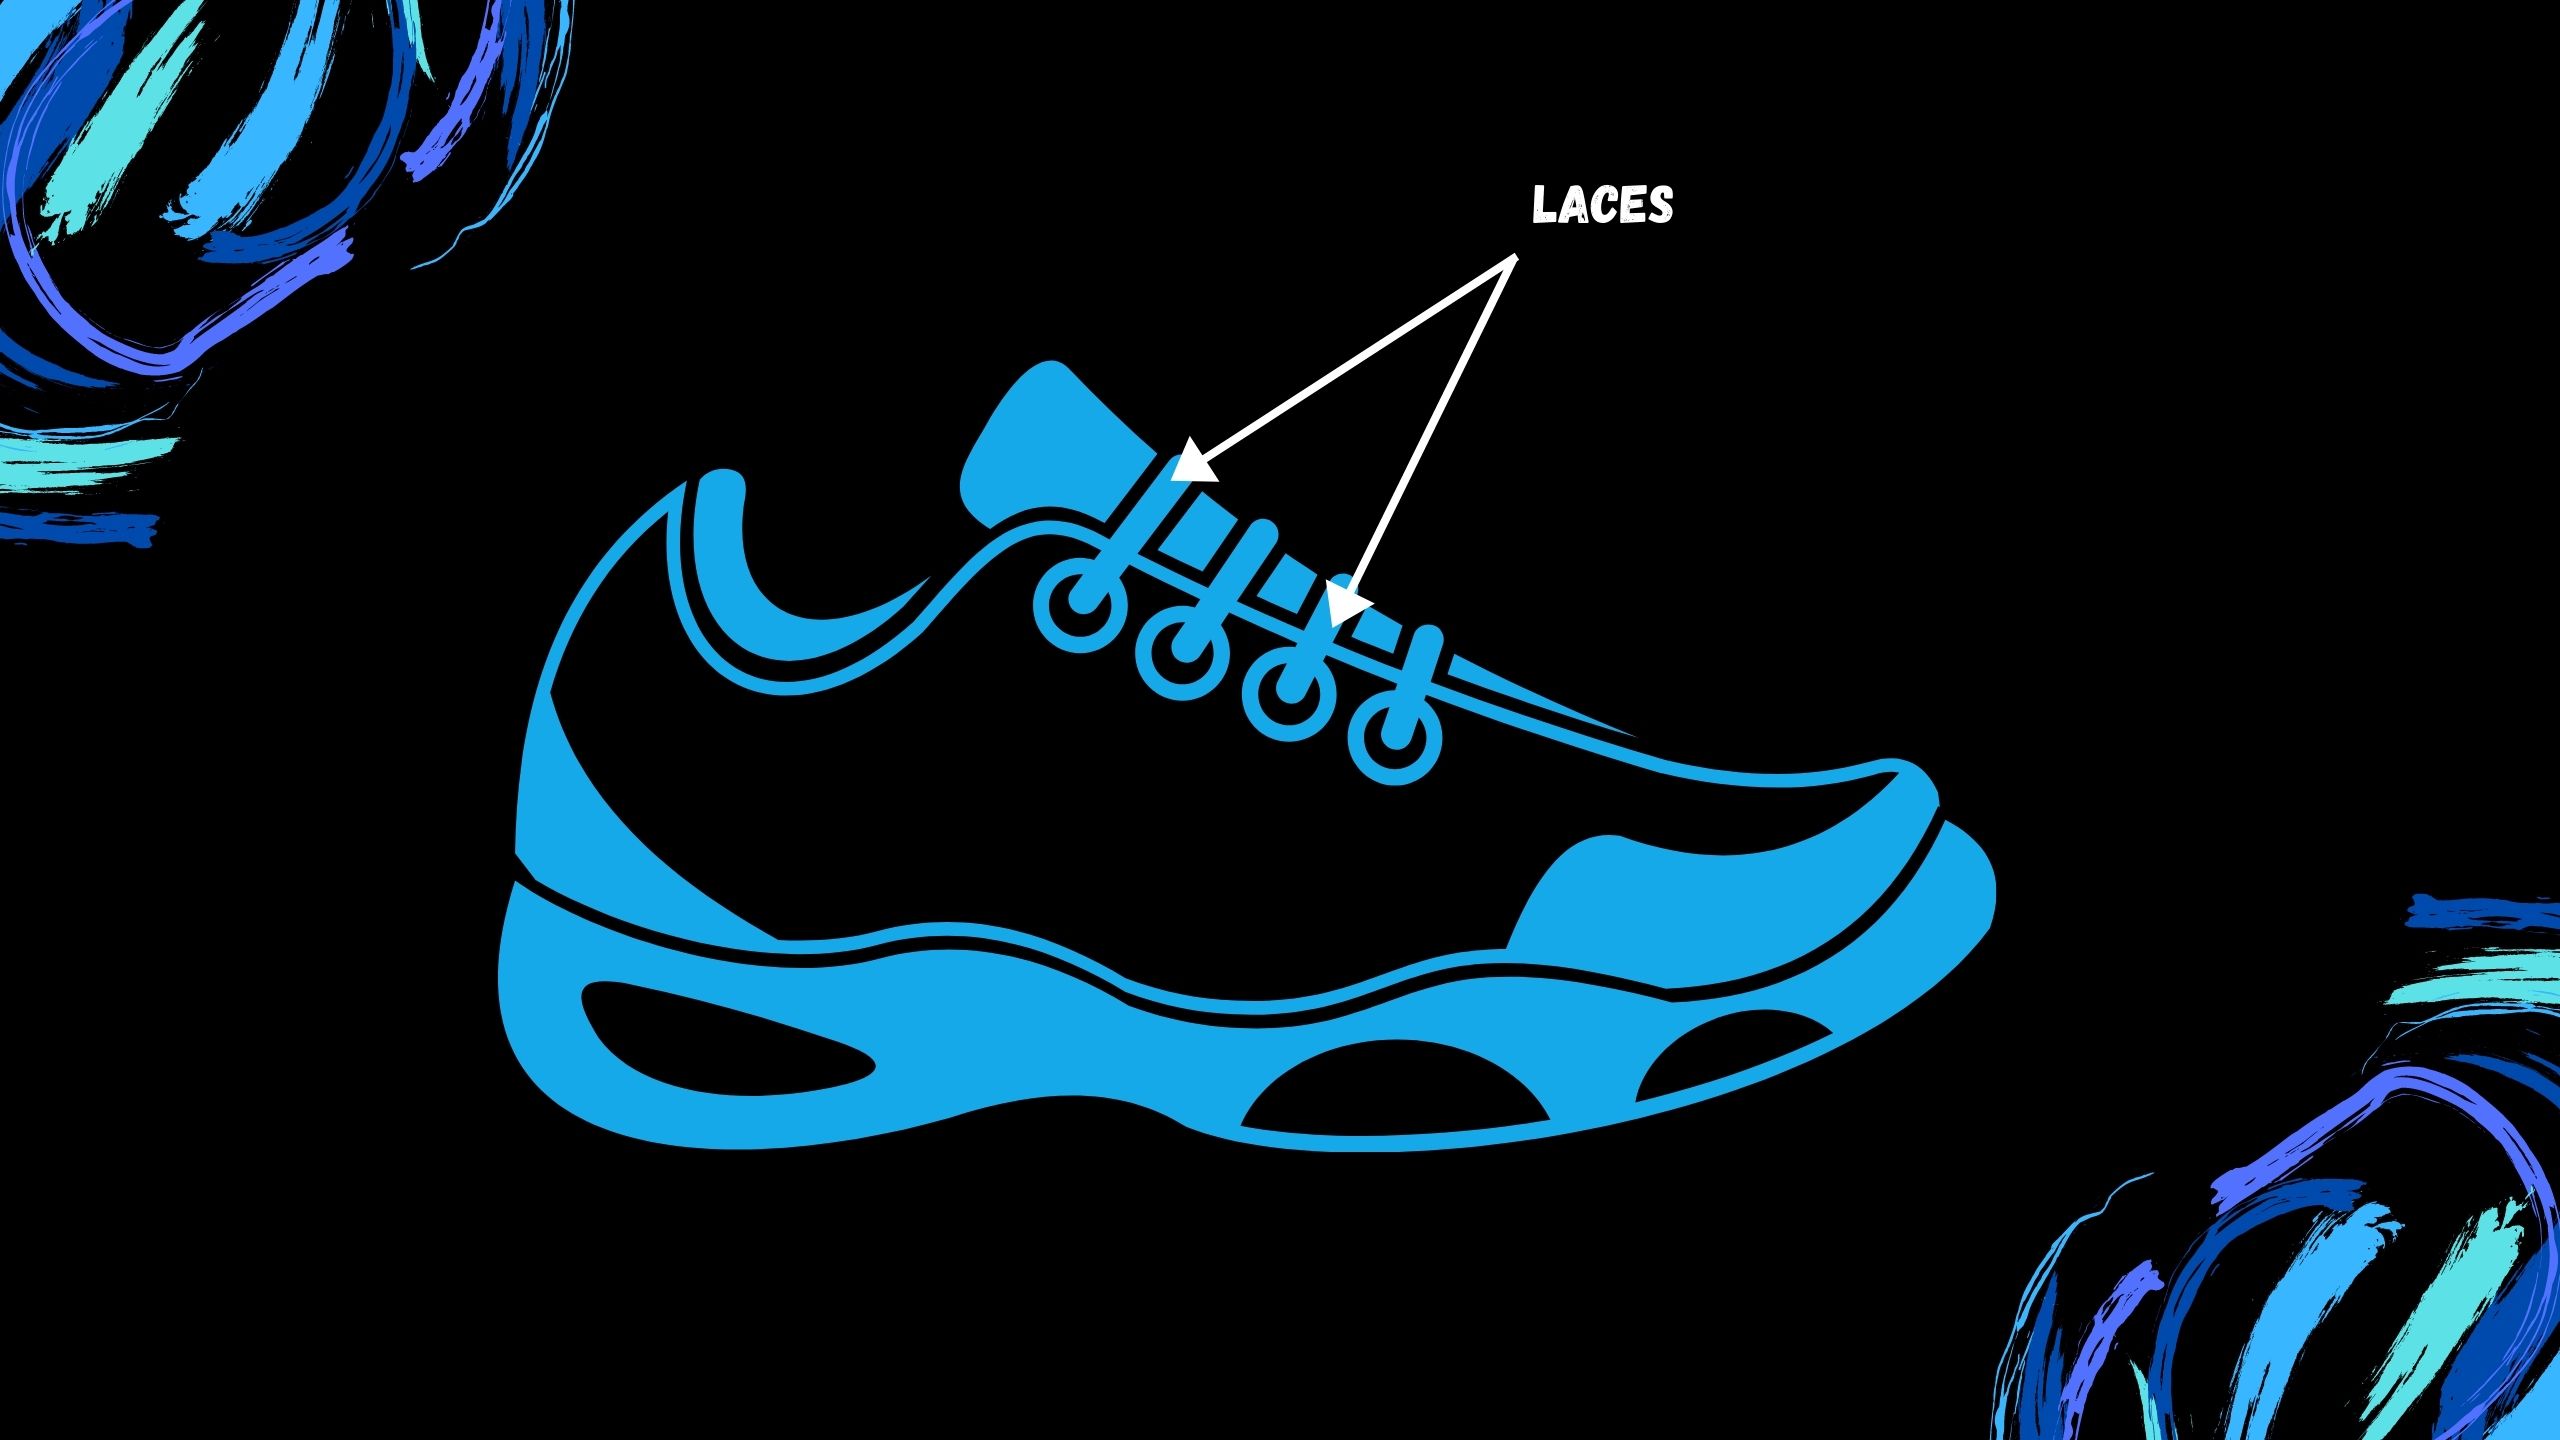 tennis shoes laces